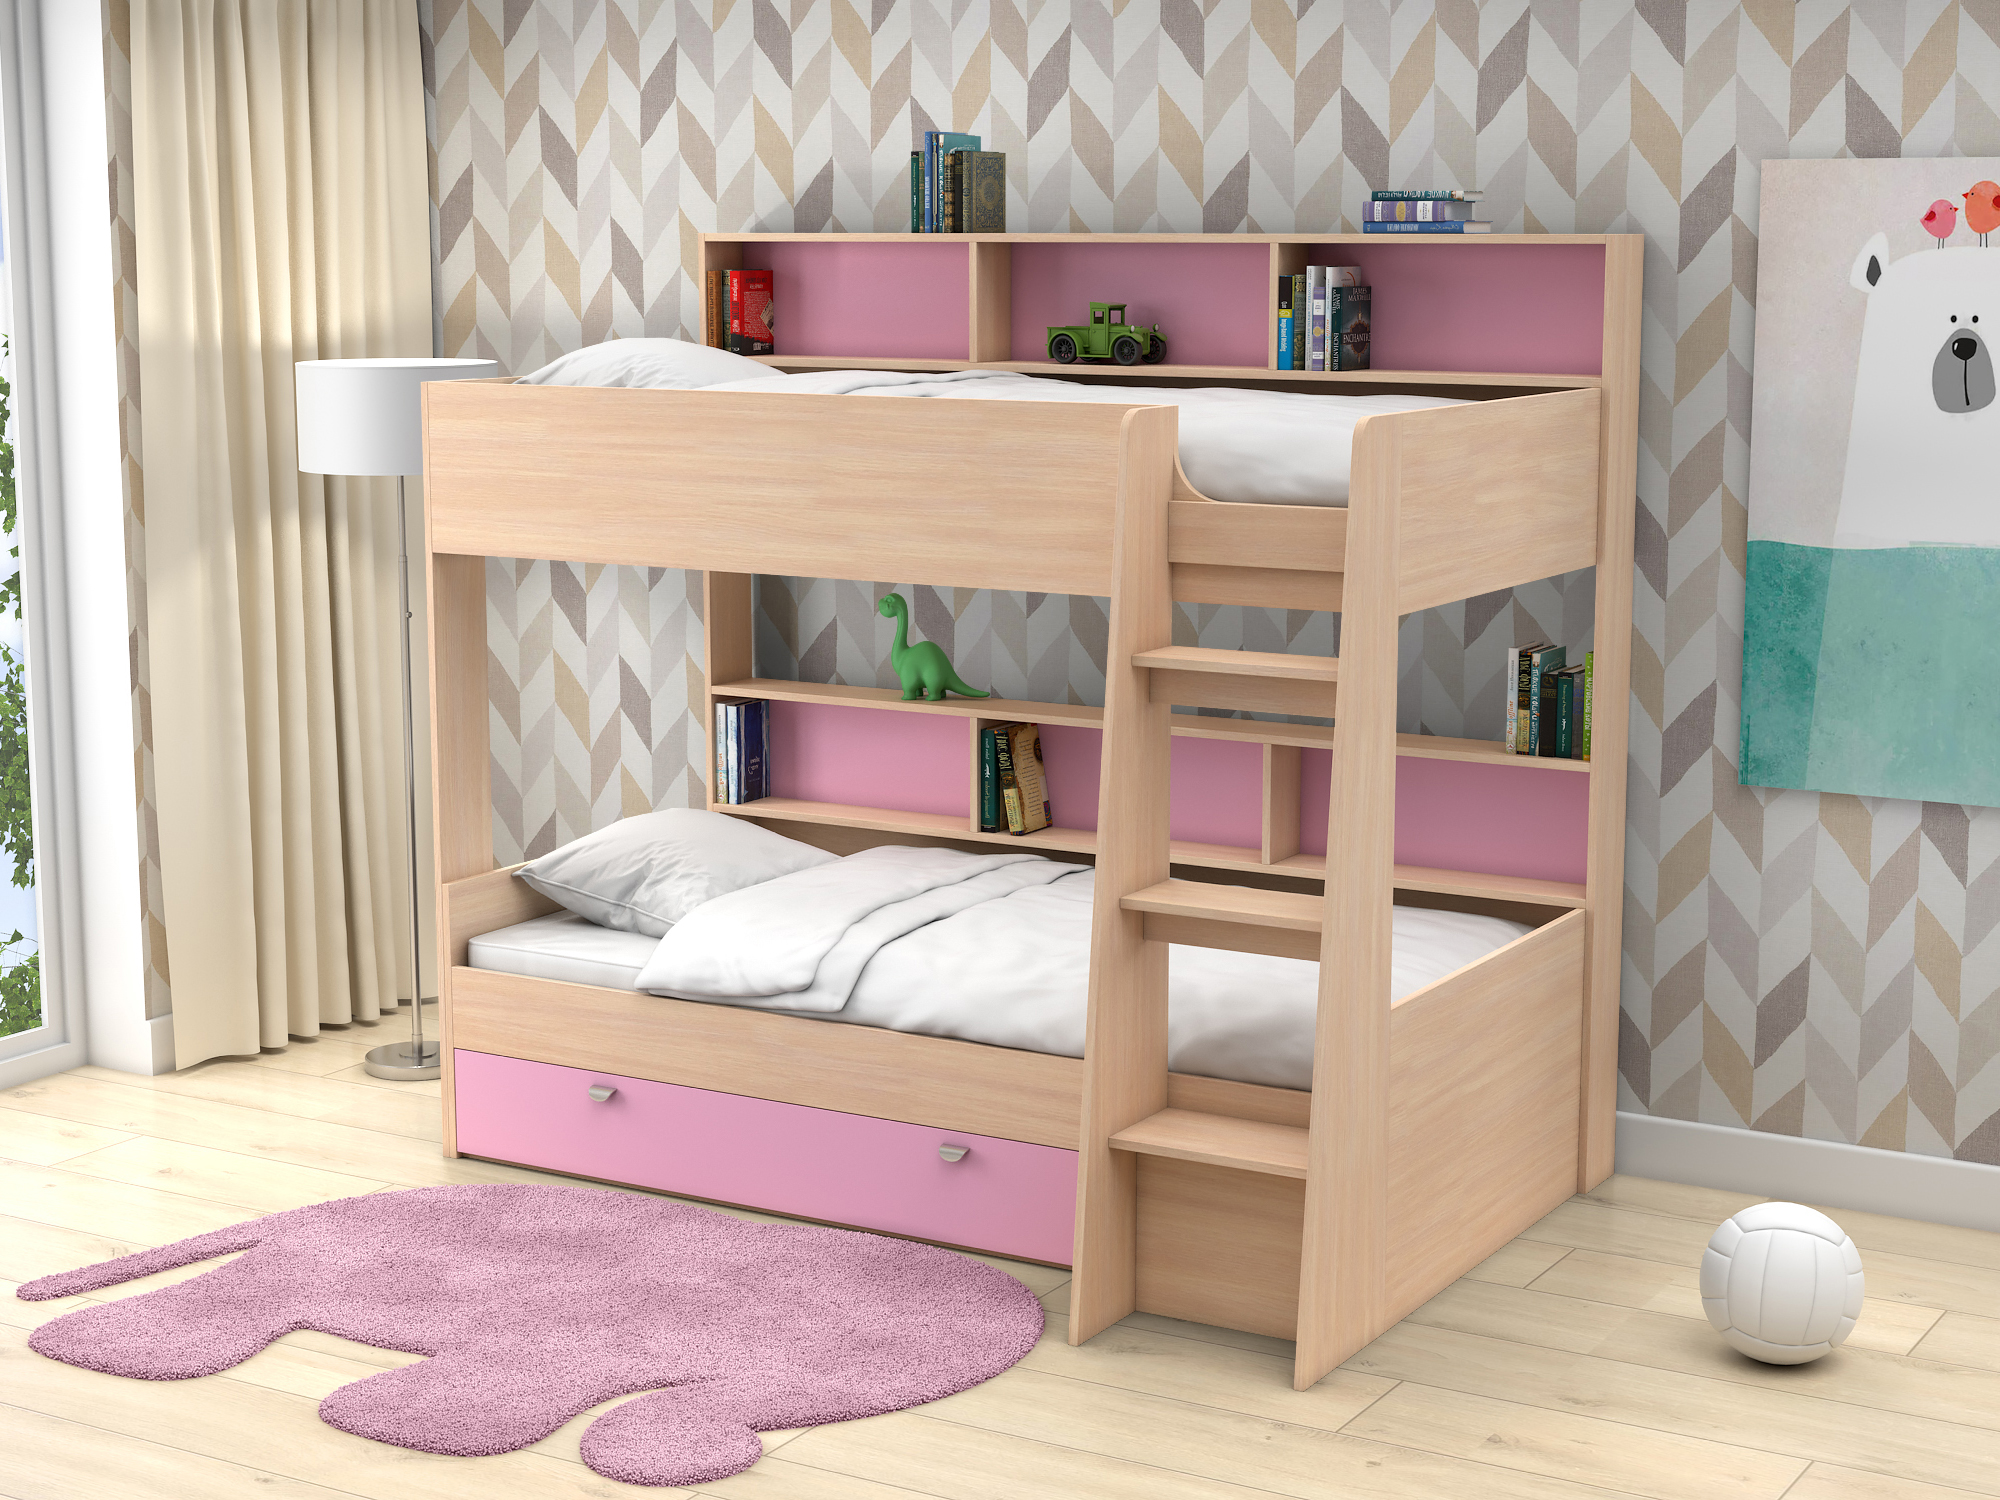 Двухъярусная кровать Golden Kids-1 (90х200) Розовый, Белый, Бежевый, ЛДСП кровати для подростков белый слон plus golden kids 1 двухъярусная белый